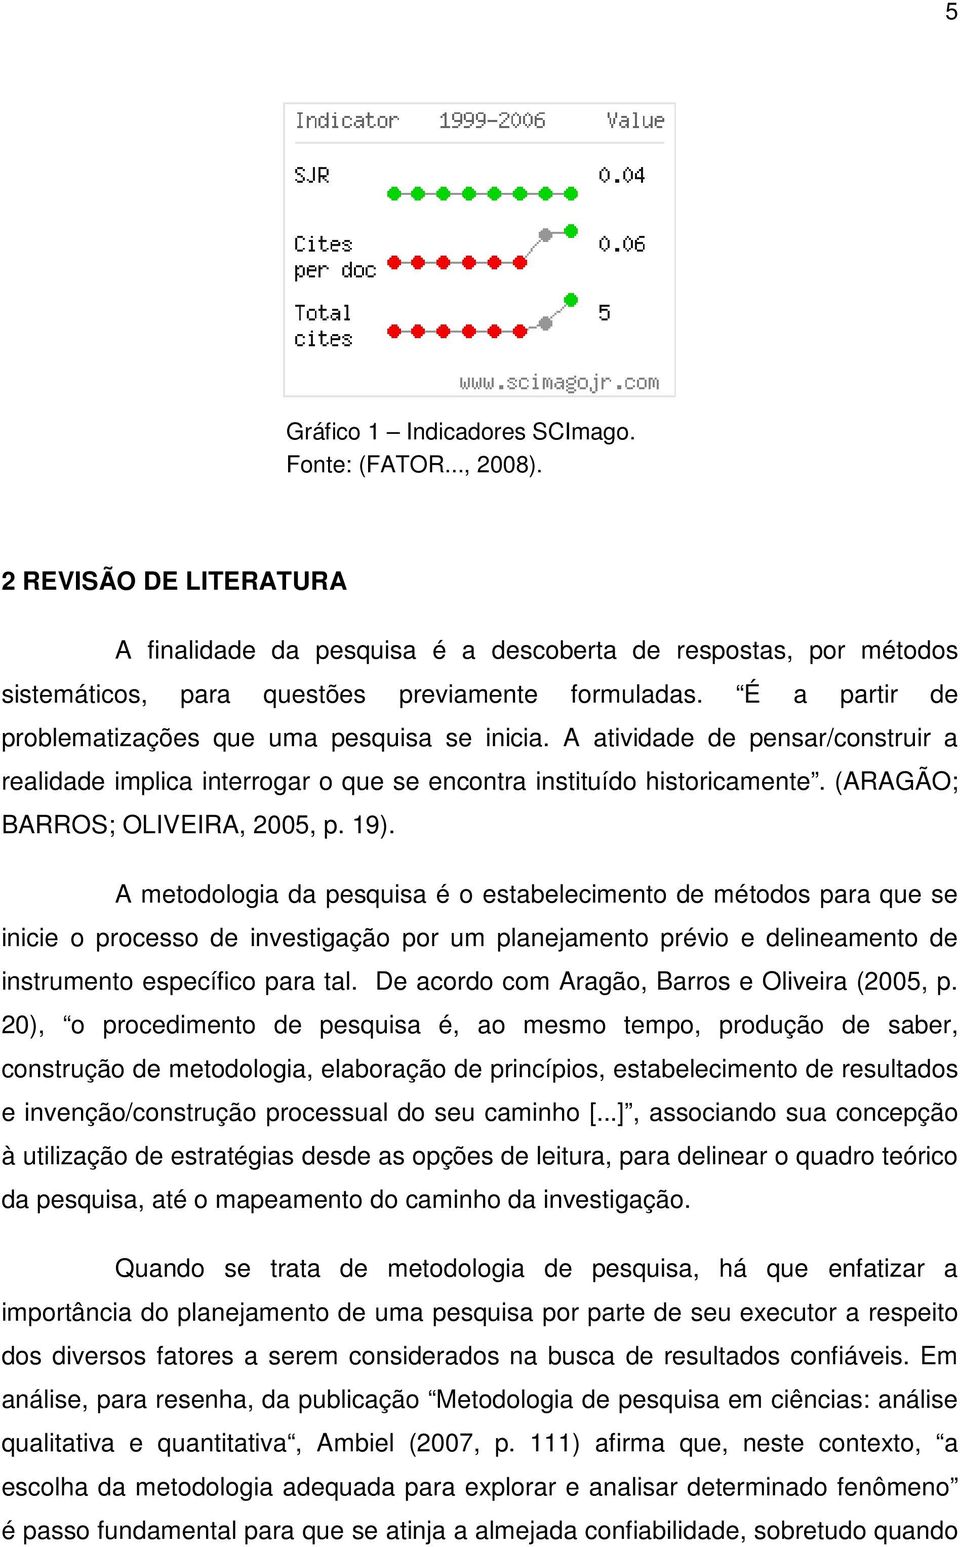 (ARAGÃO; BARROS; OLIVEIRA, 2005, p. 19).